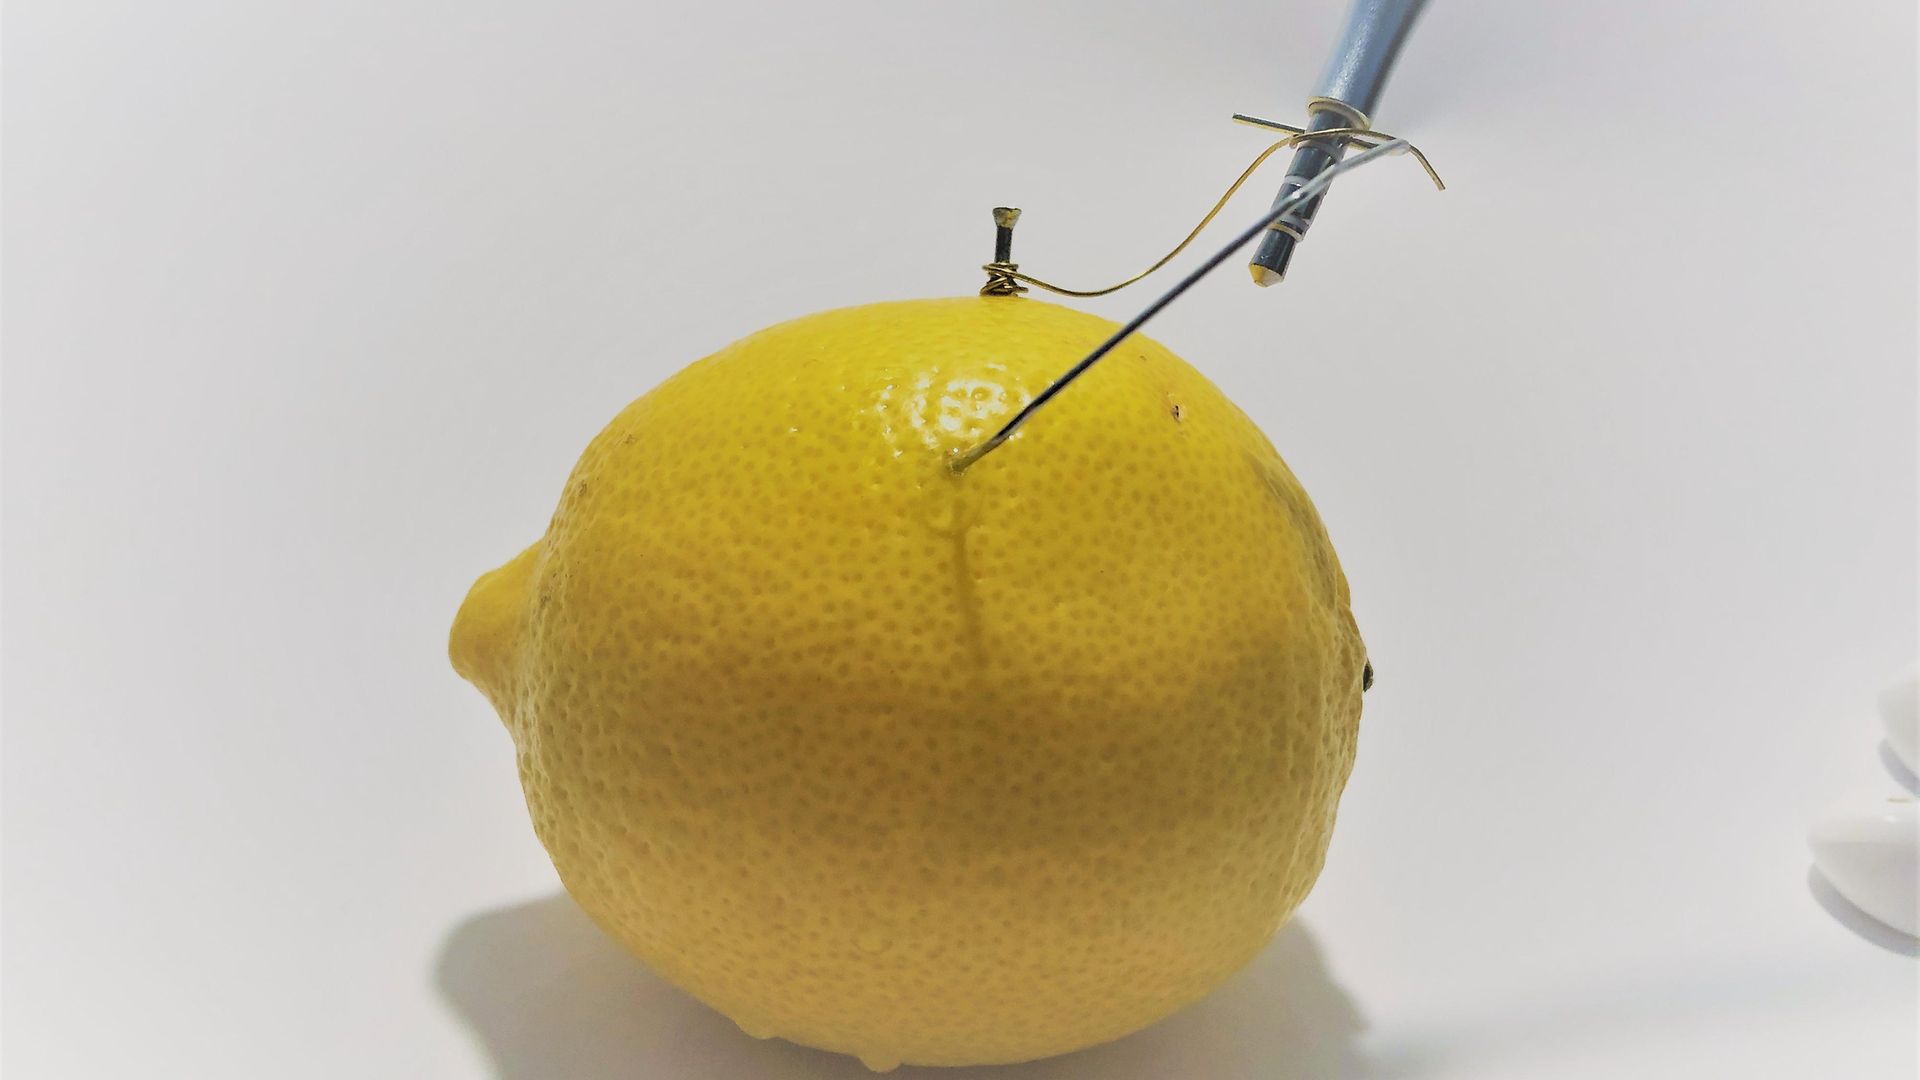 крупный план лимона с торчащей проволокой